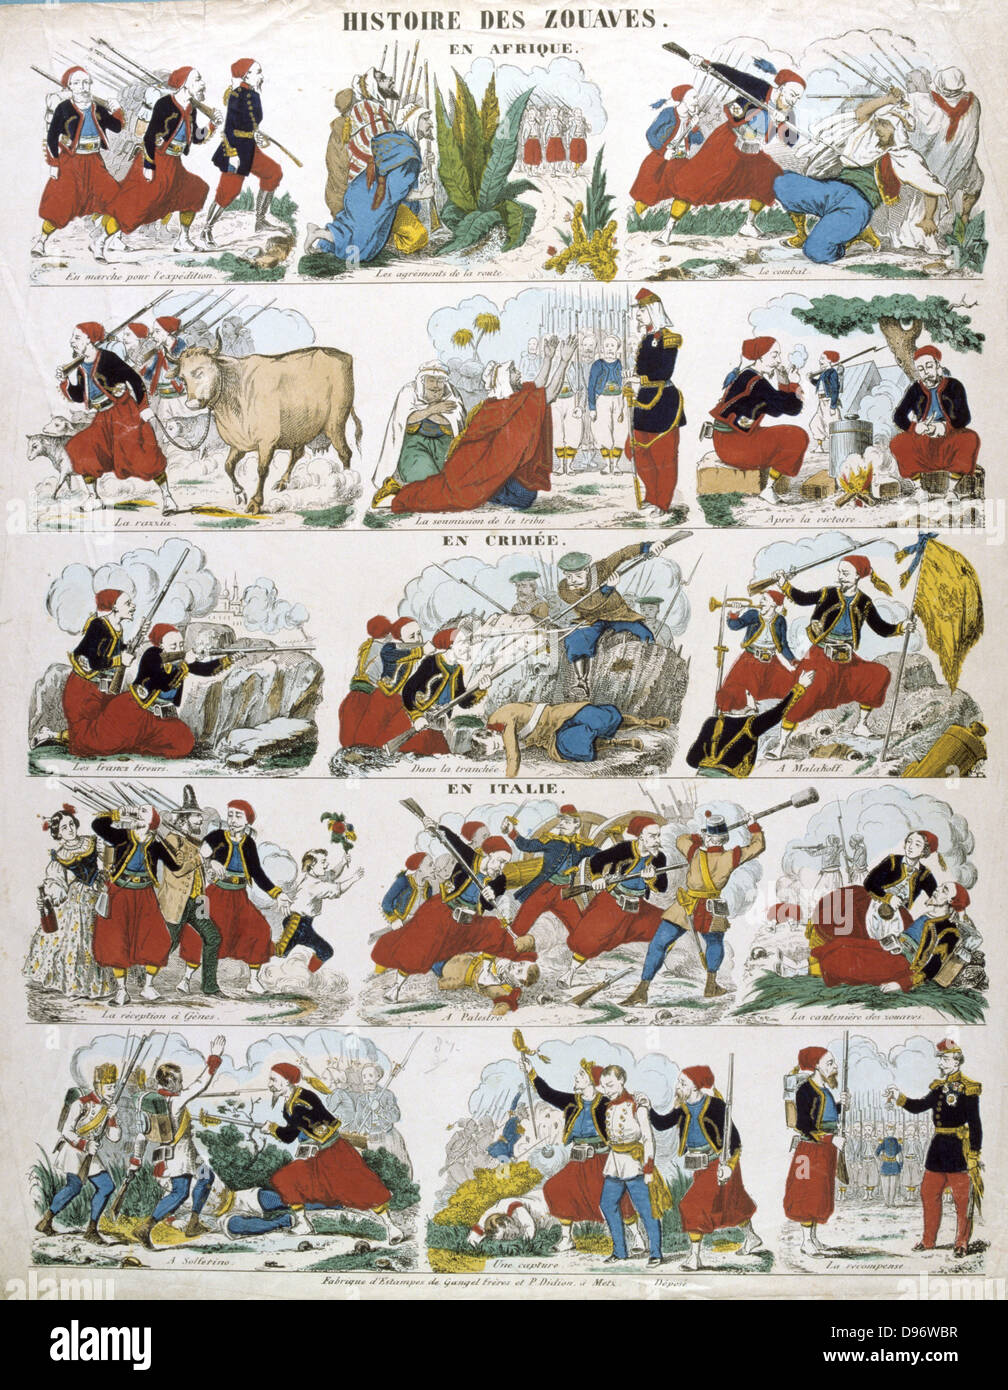 Geschichte der Zouaven, Französische Infanterie-Regimenter in Algerien zum ersten Mal im Jahre 1831 angesprochen. Beliebte französische handkolorierten Holzschnitt. Stockfoto